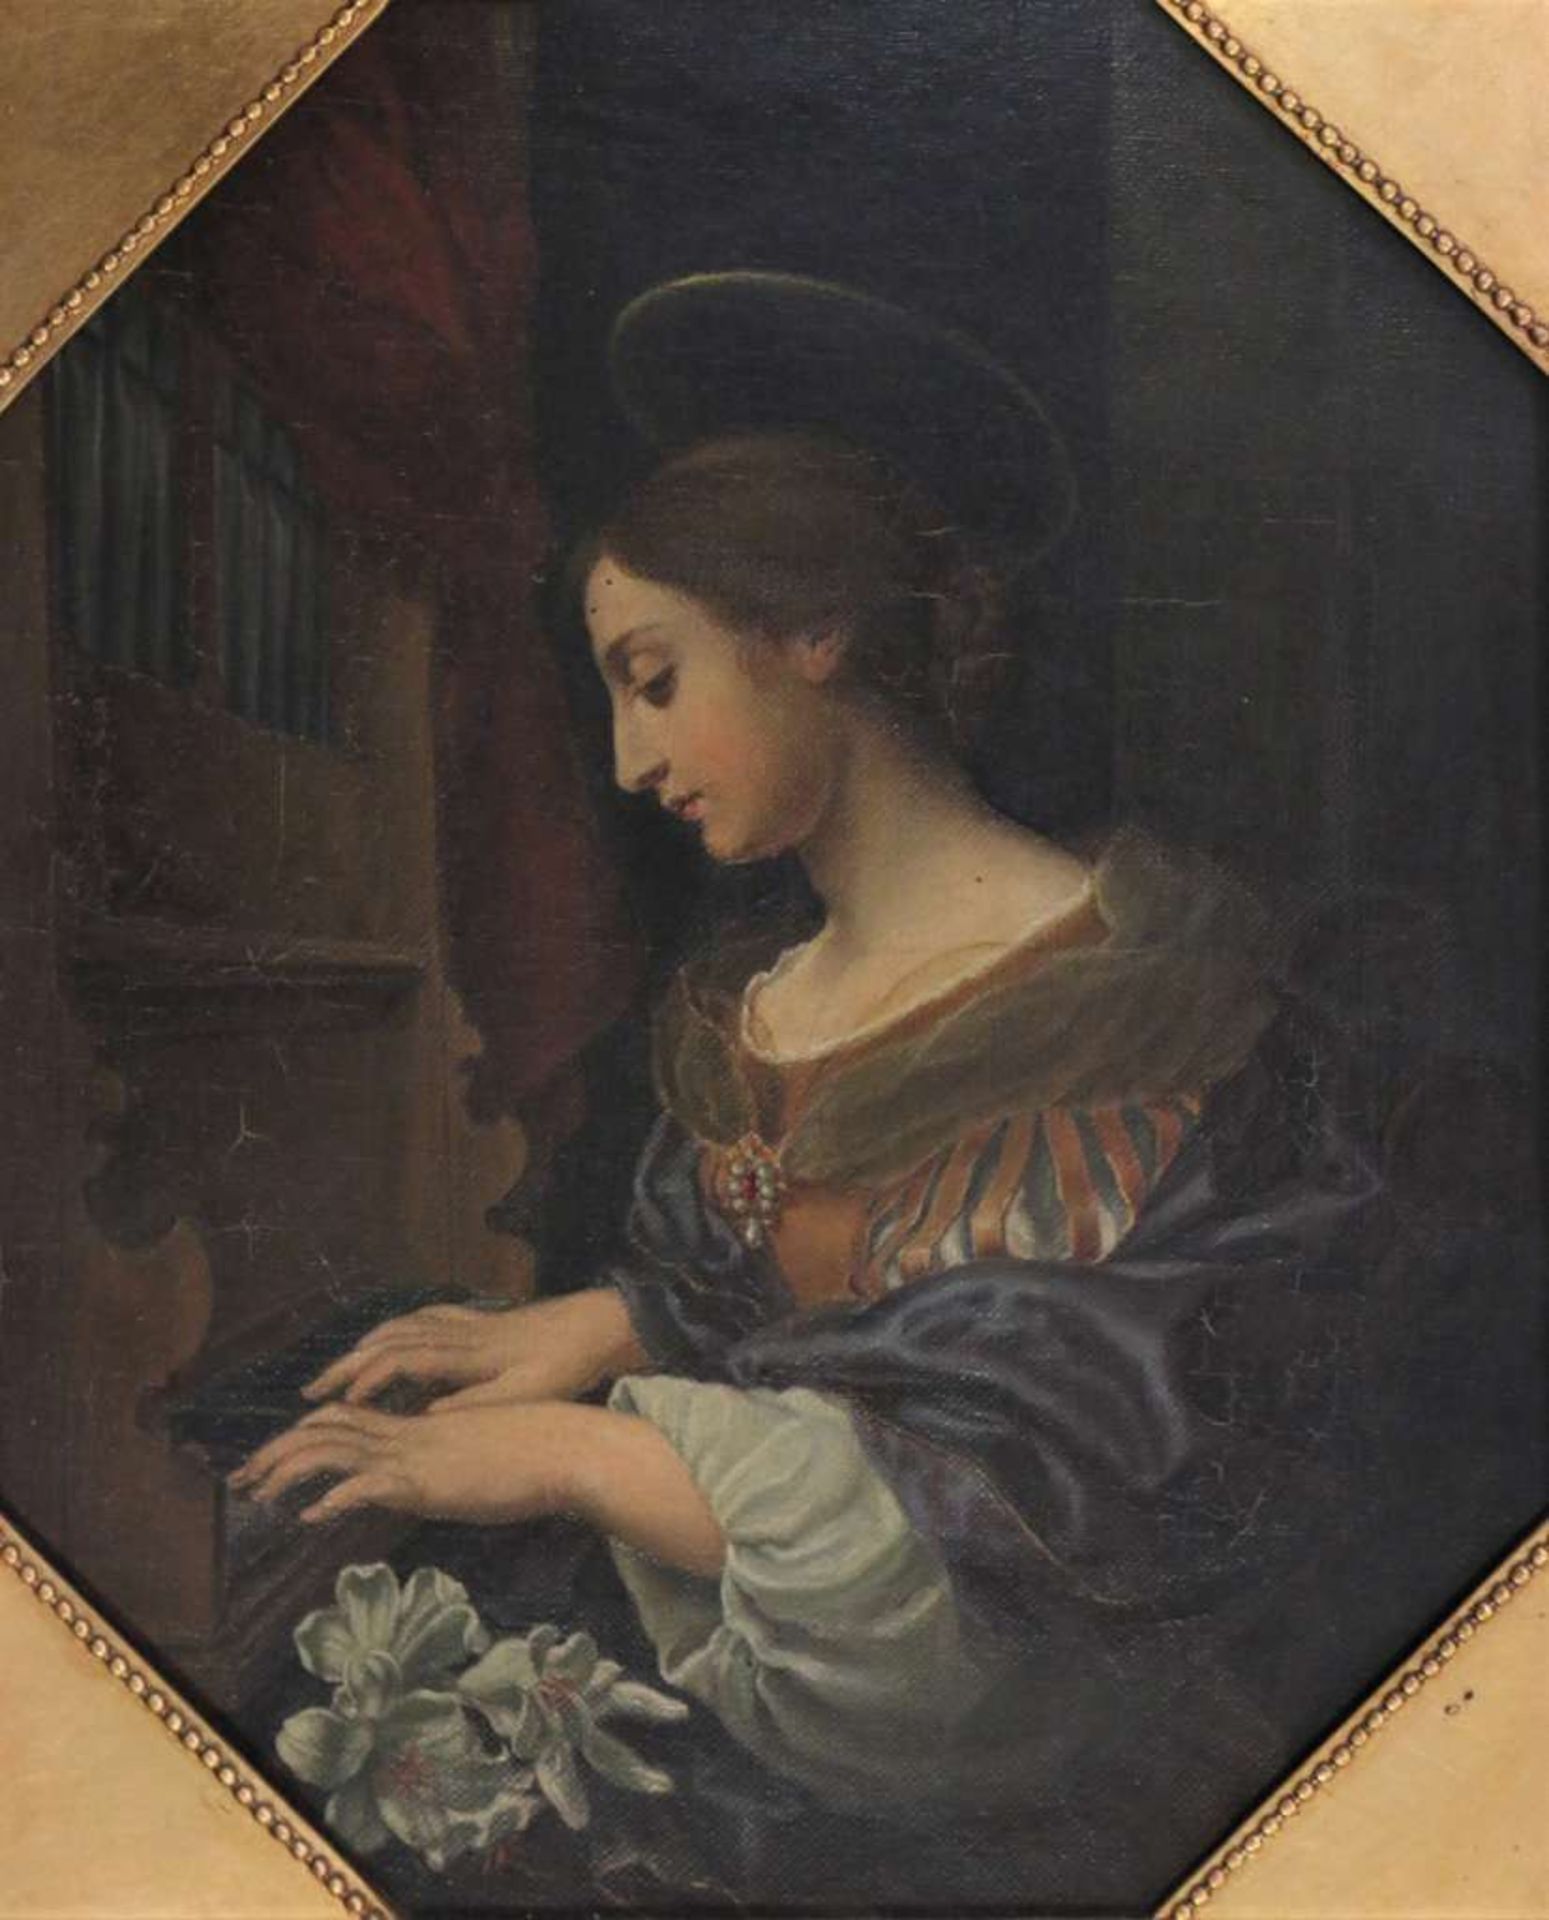 Carlo Dolci (1616-1686) nach, "Die Heilige Cäcilie an der Orgel", Öl auf Leinwand, verso bez. cop.